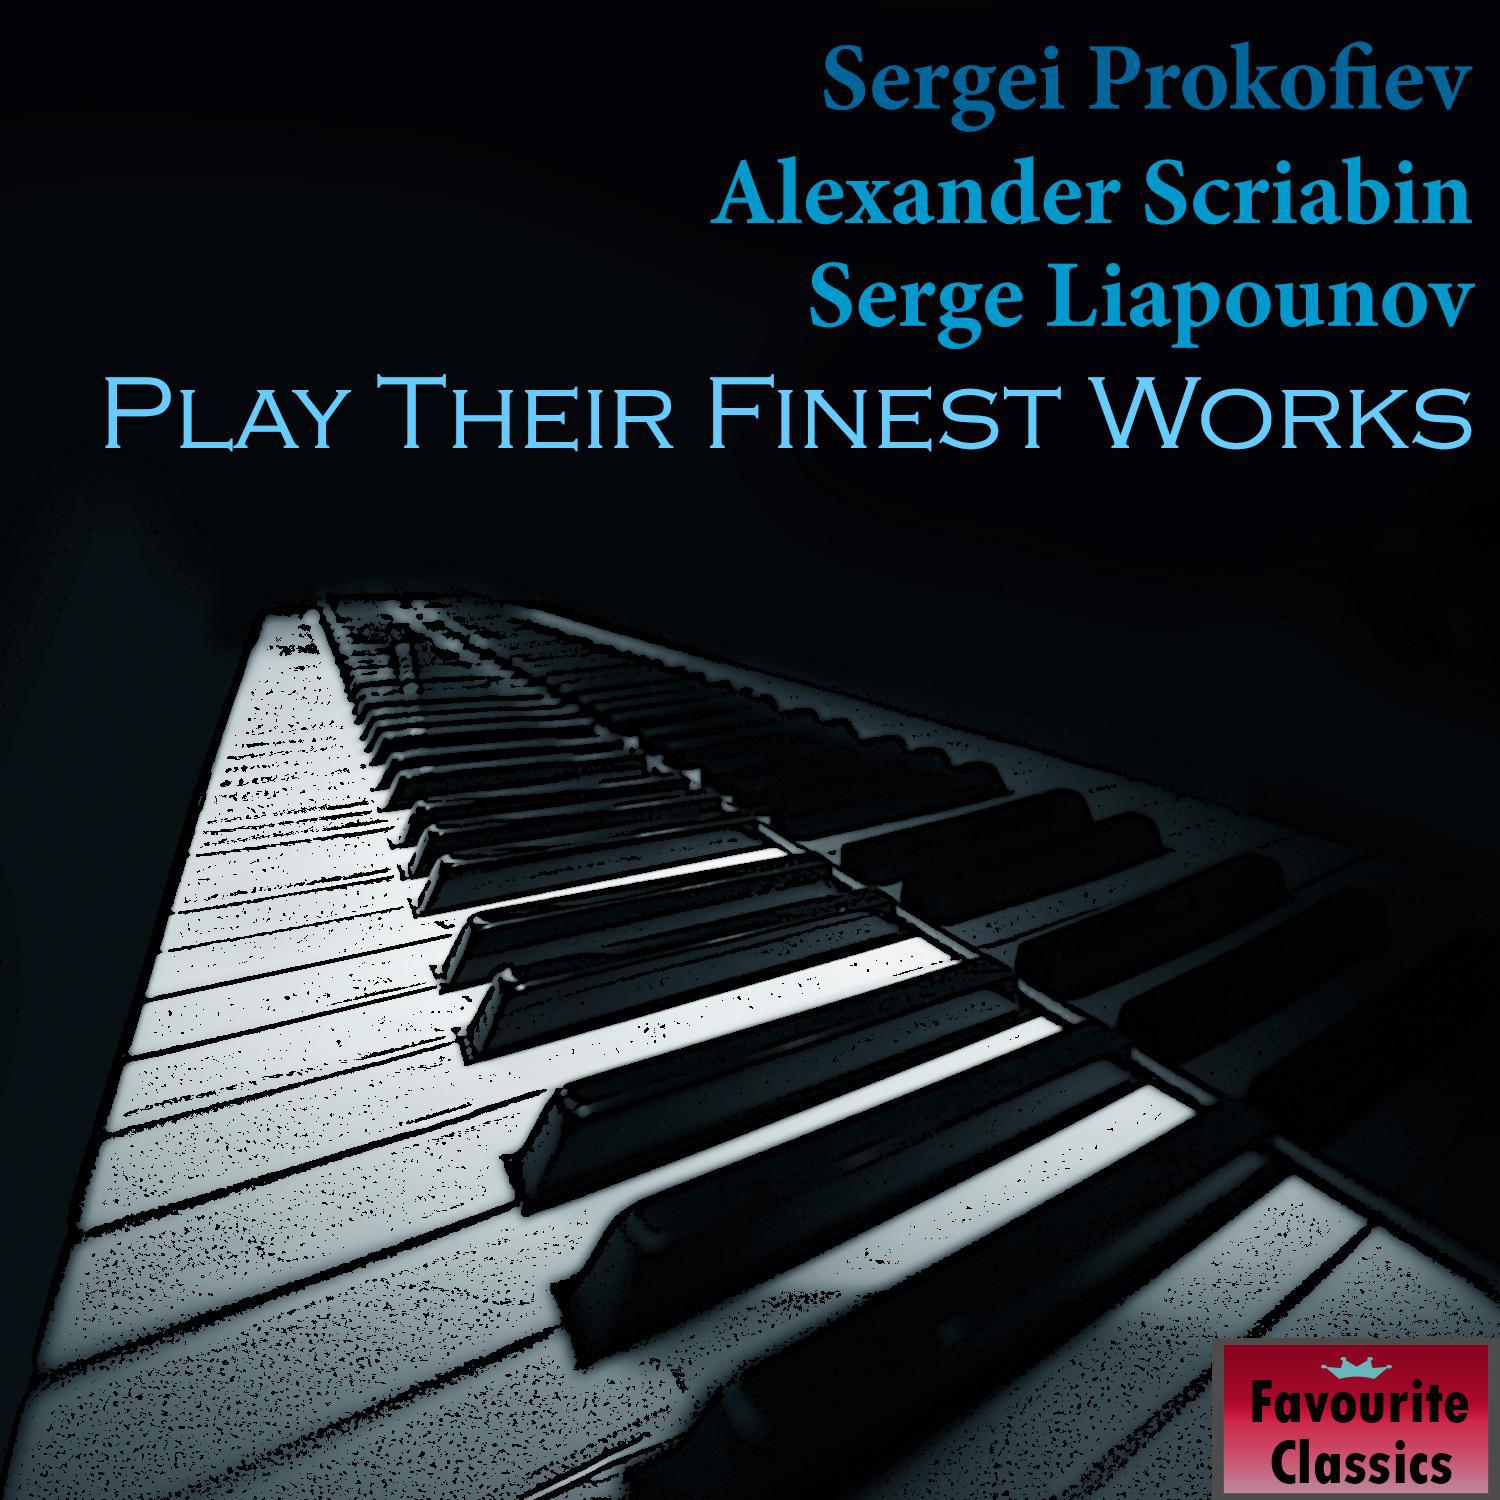 Sergei Prokofiev, Alexander Scriabin & Serge Liapounov Play Their Finest Works